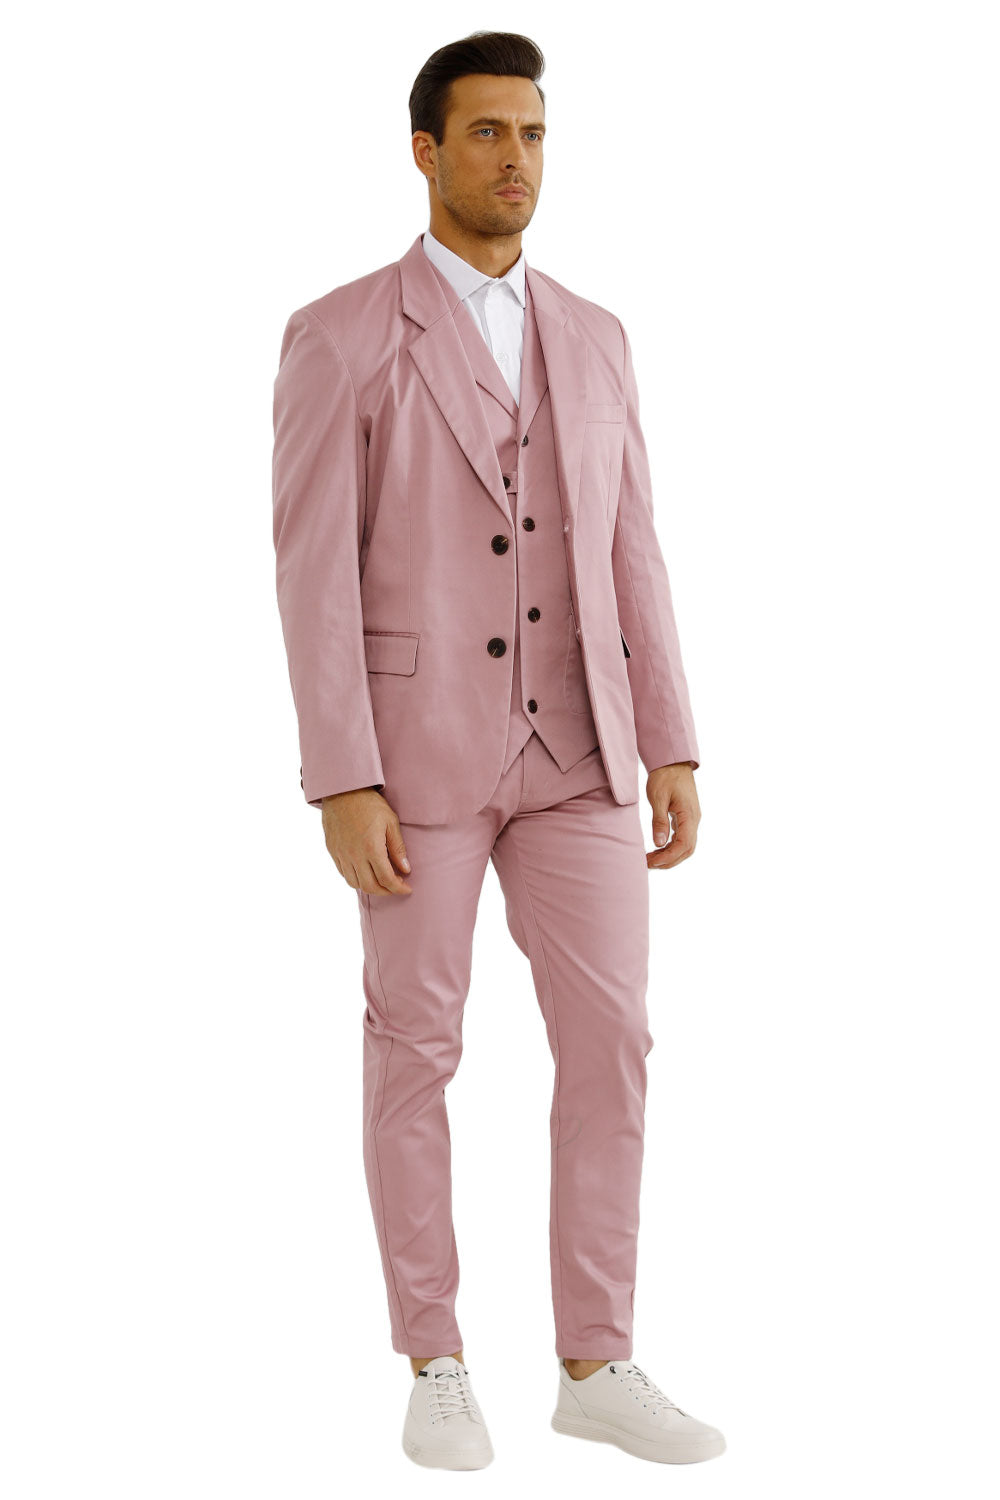 men's pink suit